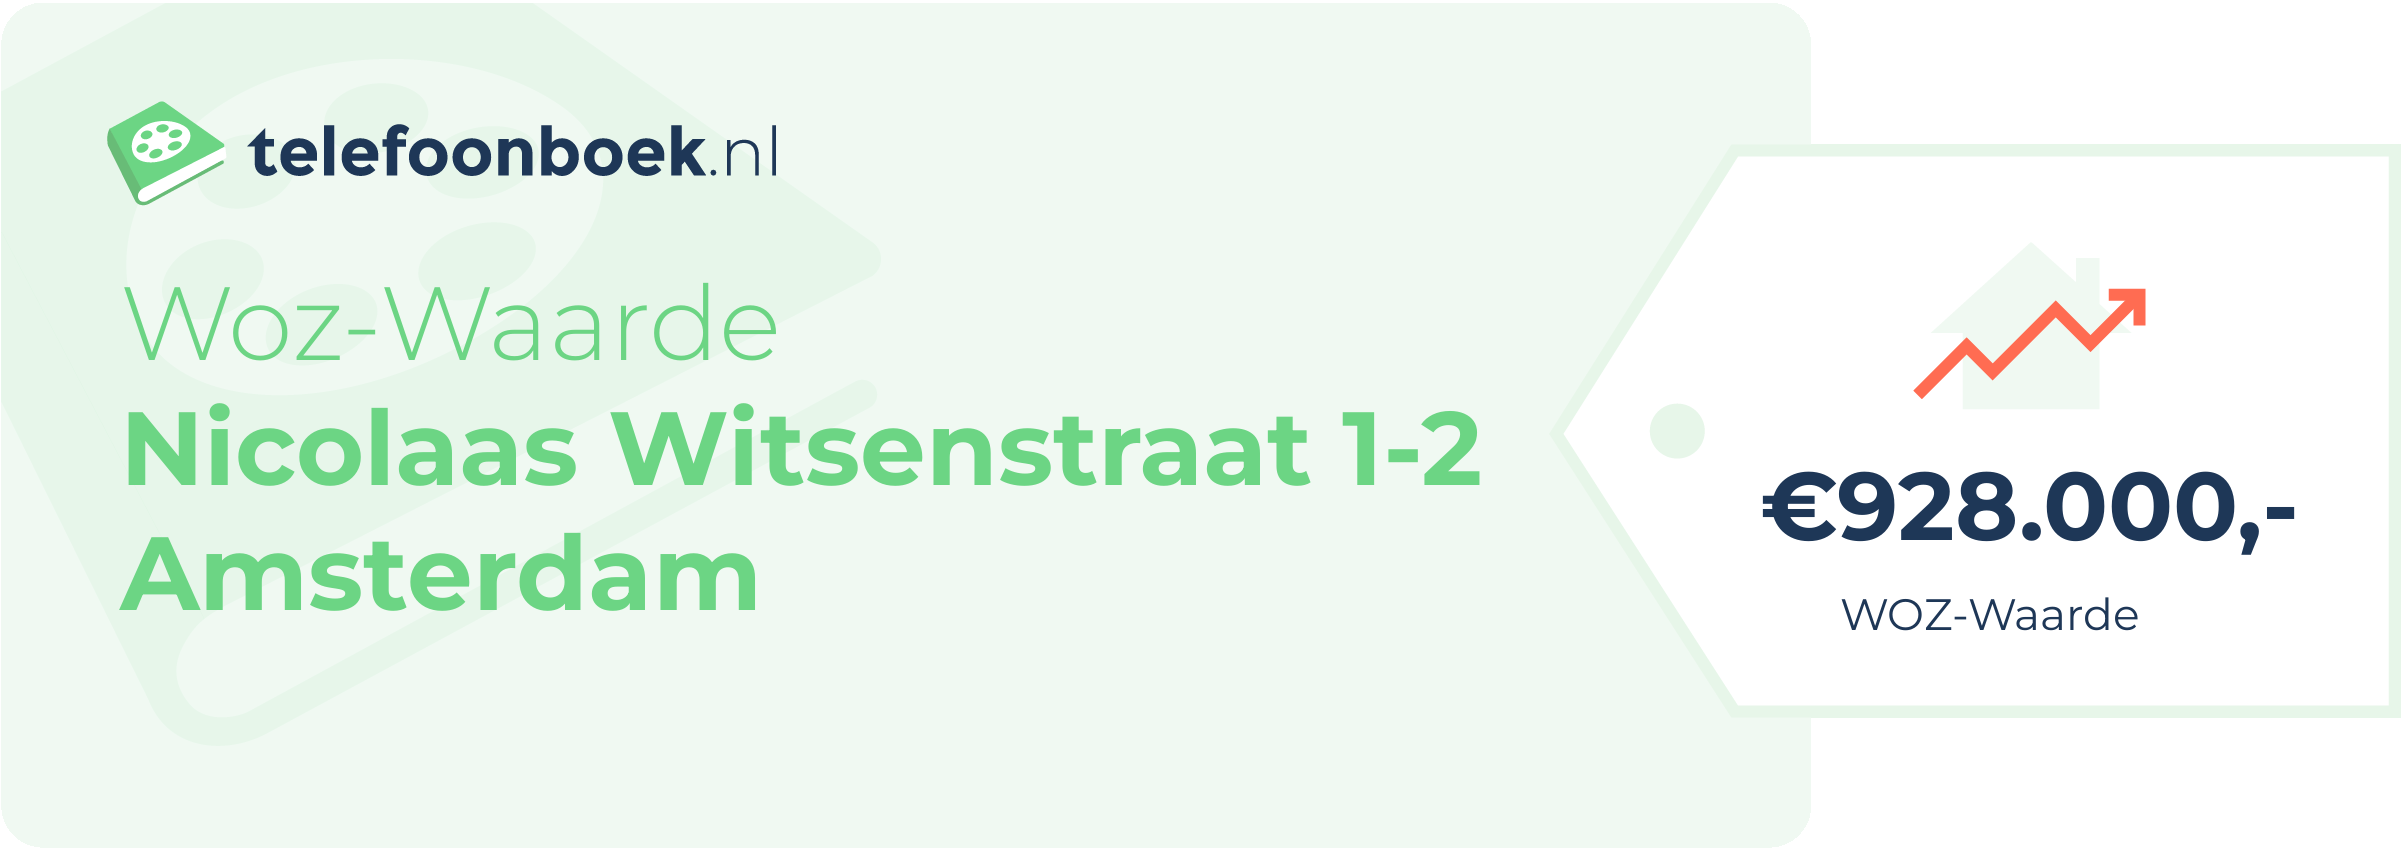 WOZ-waarde Nicolaas Witsenstraat 1-2 Amsterdam